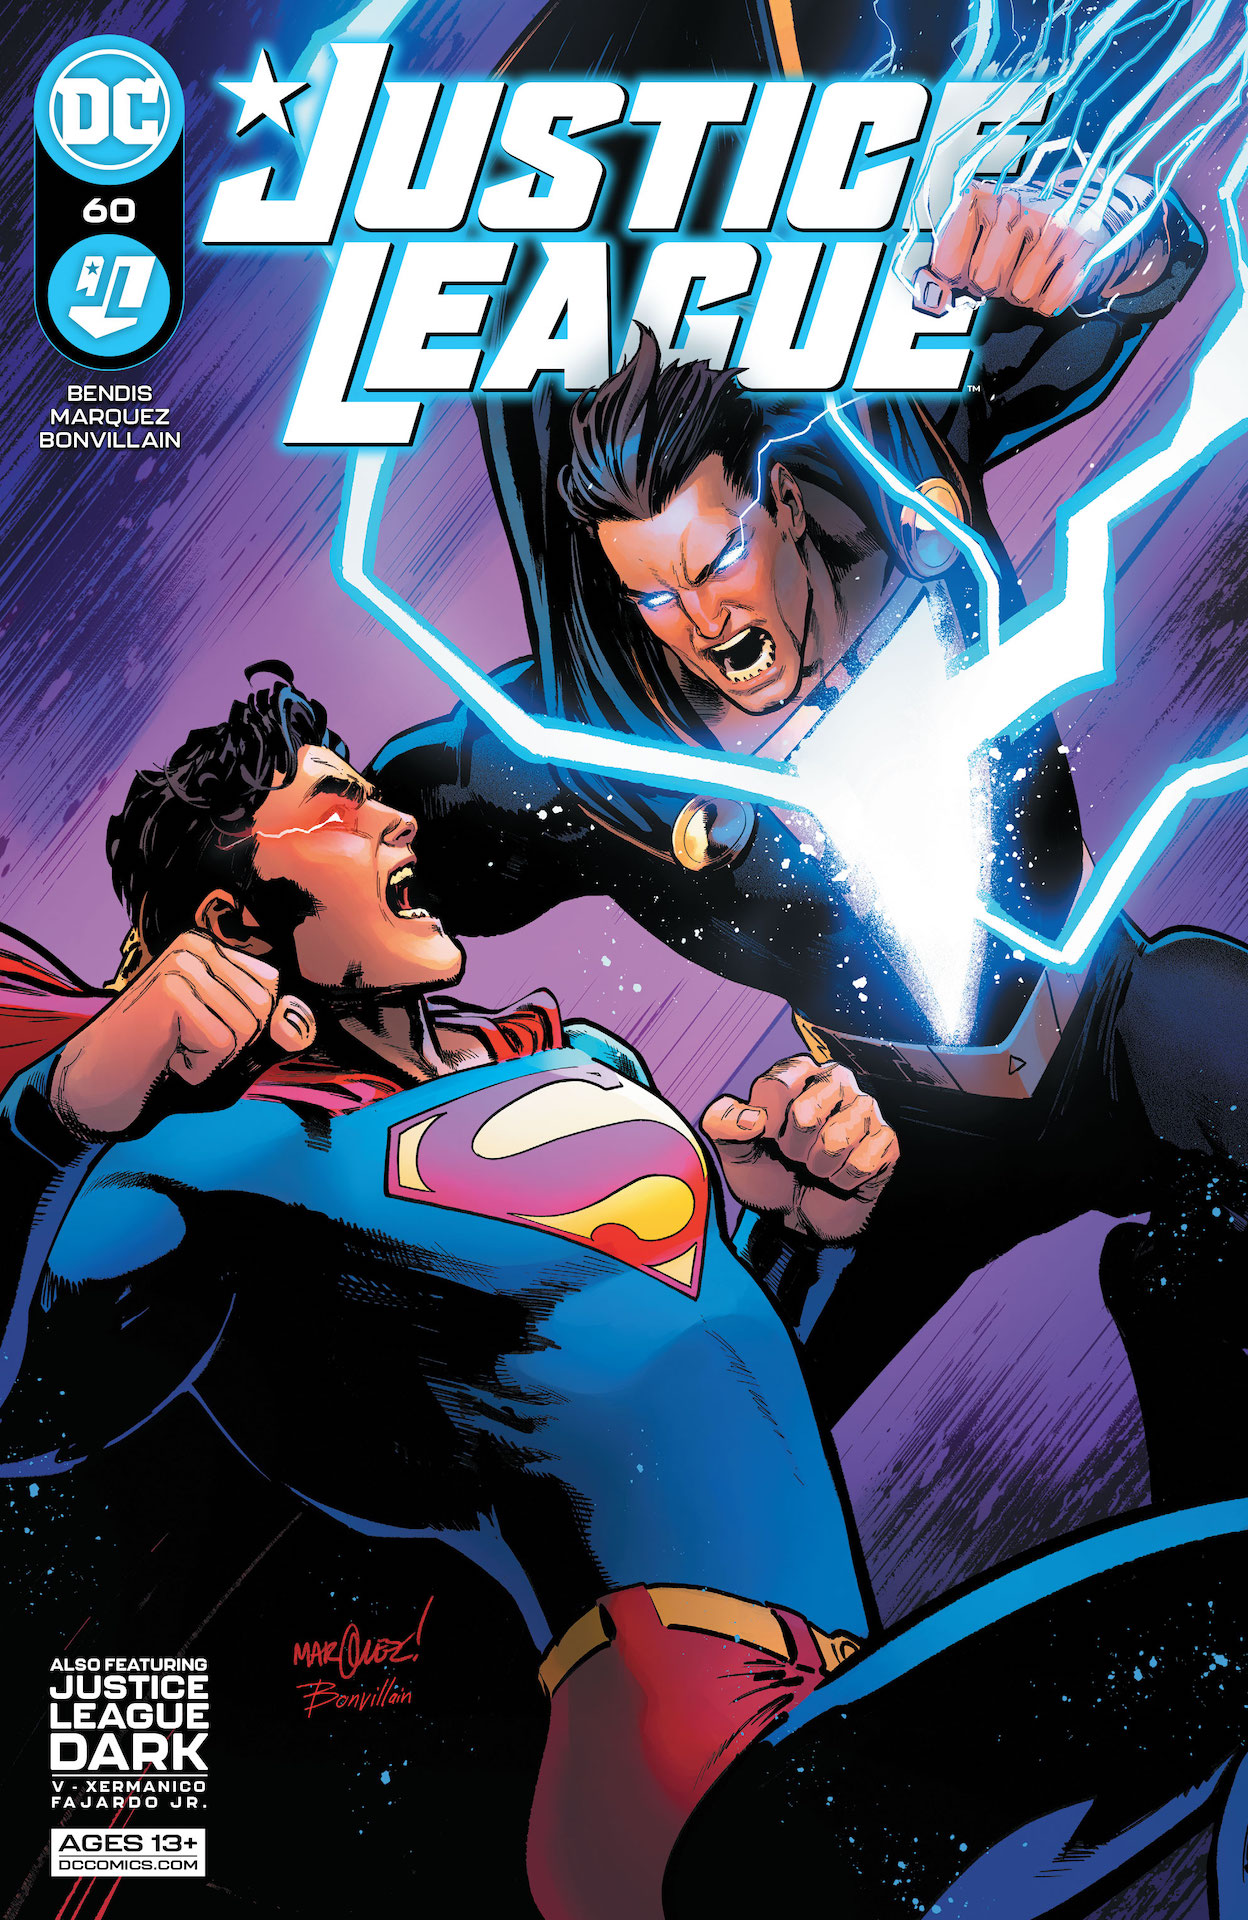 DC Preview: Justice League #60